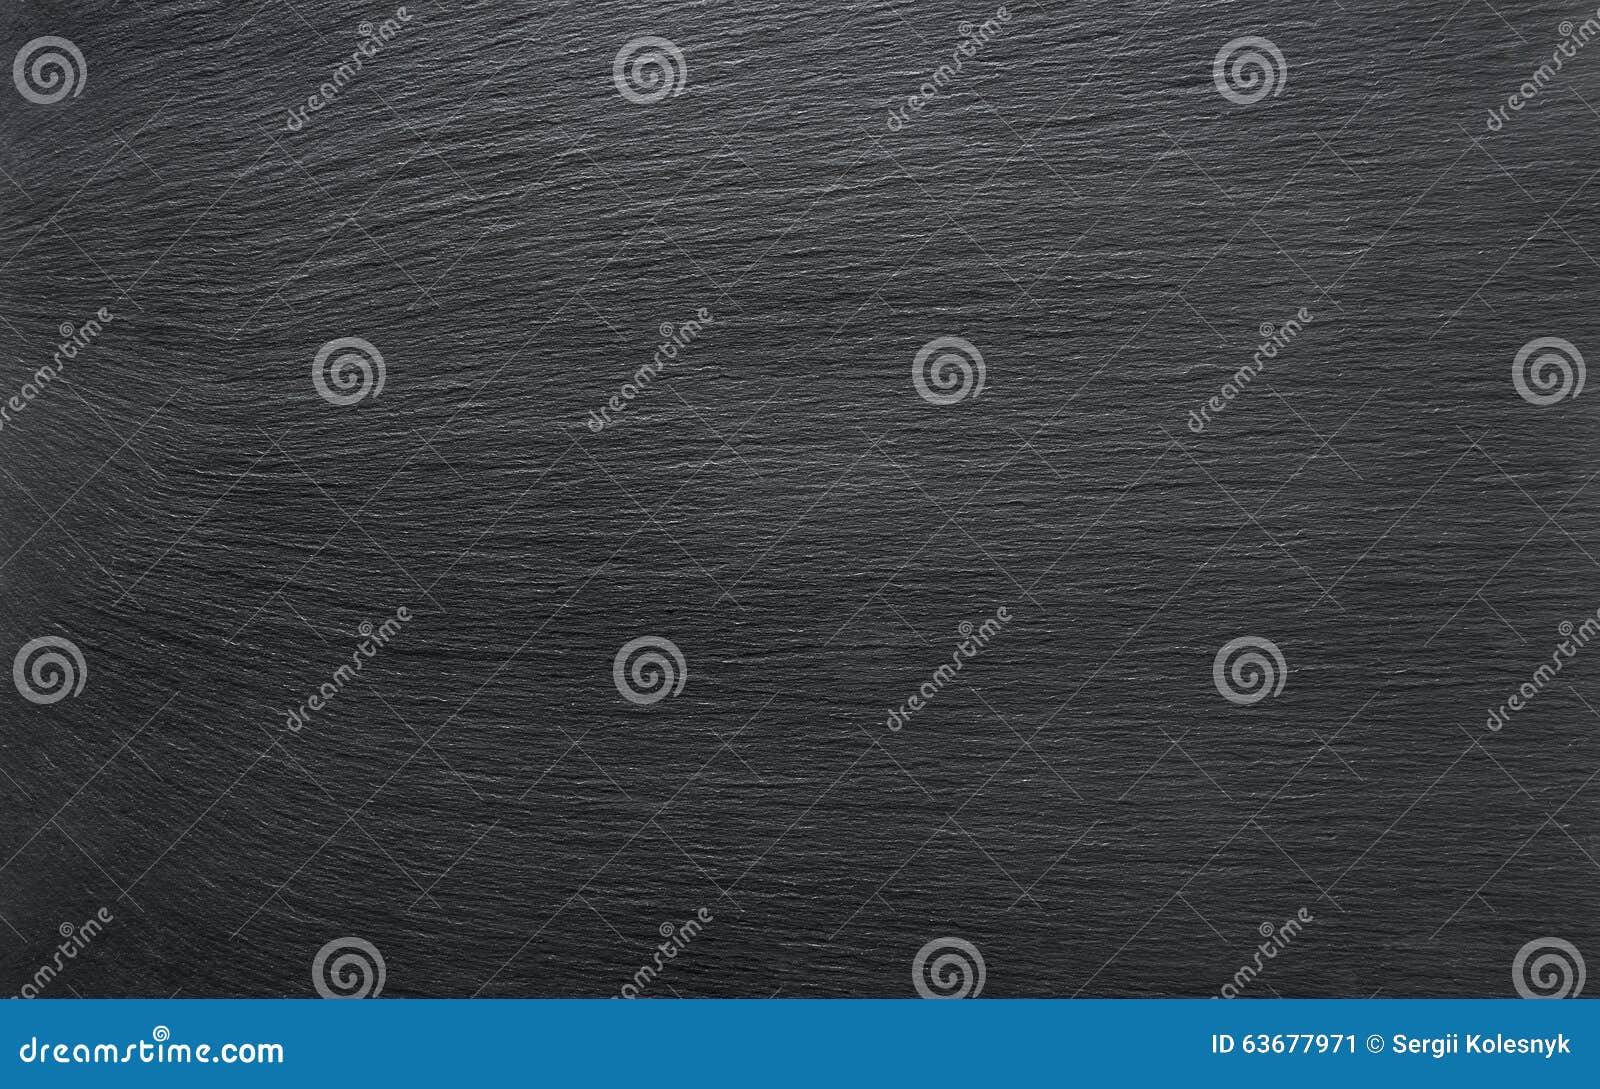 Black slate background stock image. Image of surface - 63677971